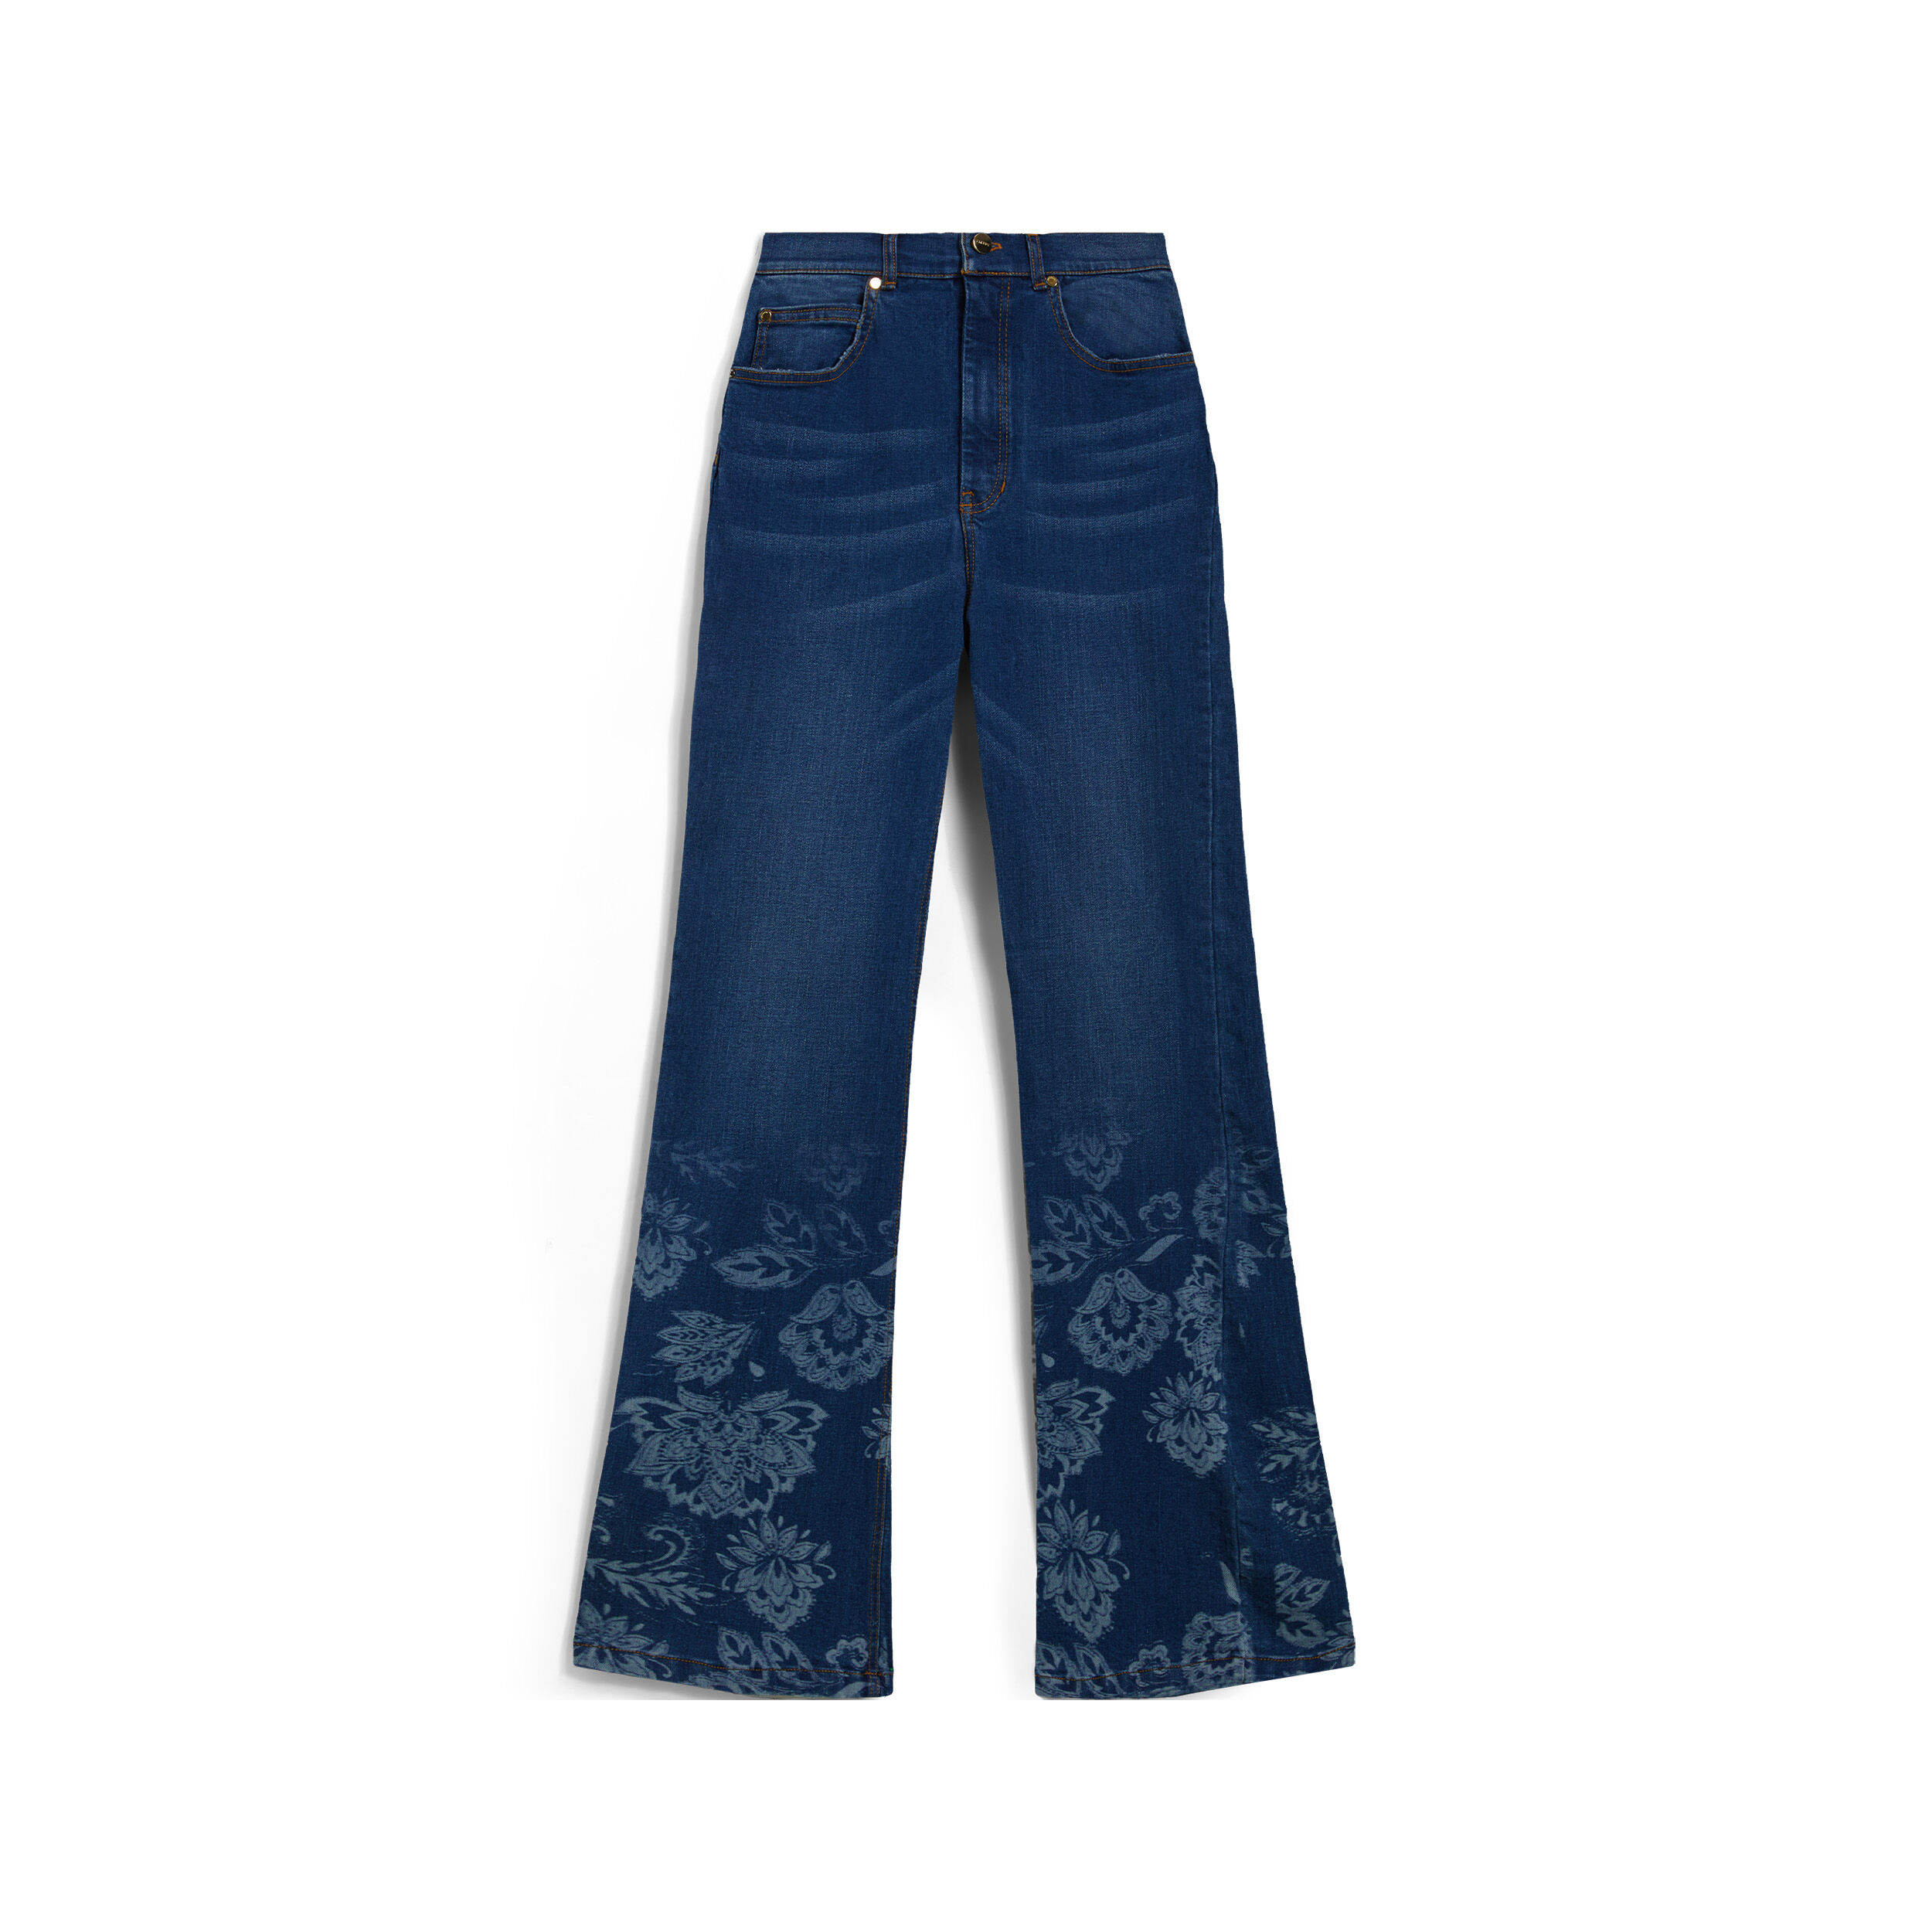 Freddy Jeans vita alta flondo a zampa decorato da grafica floreale Denim Blu Medio-Tob. Seams Donna Large